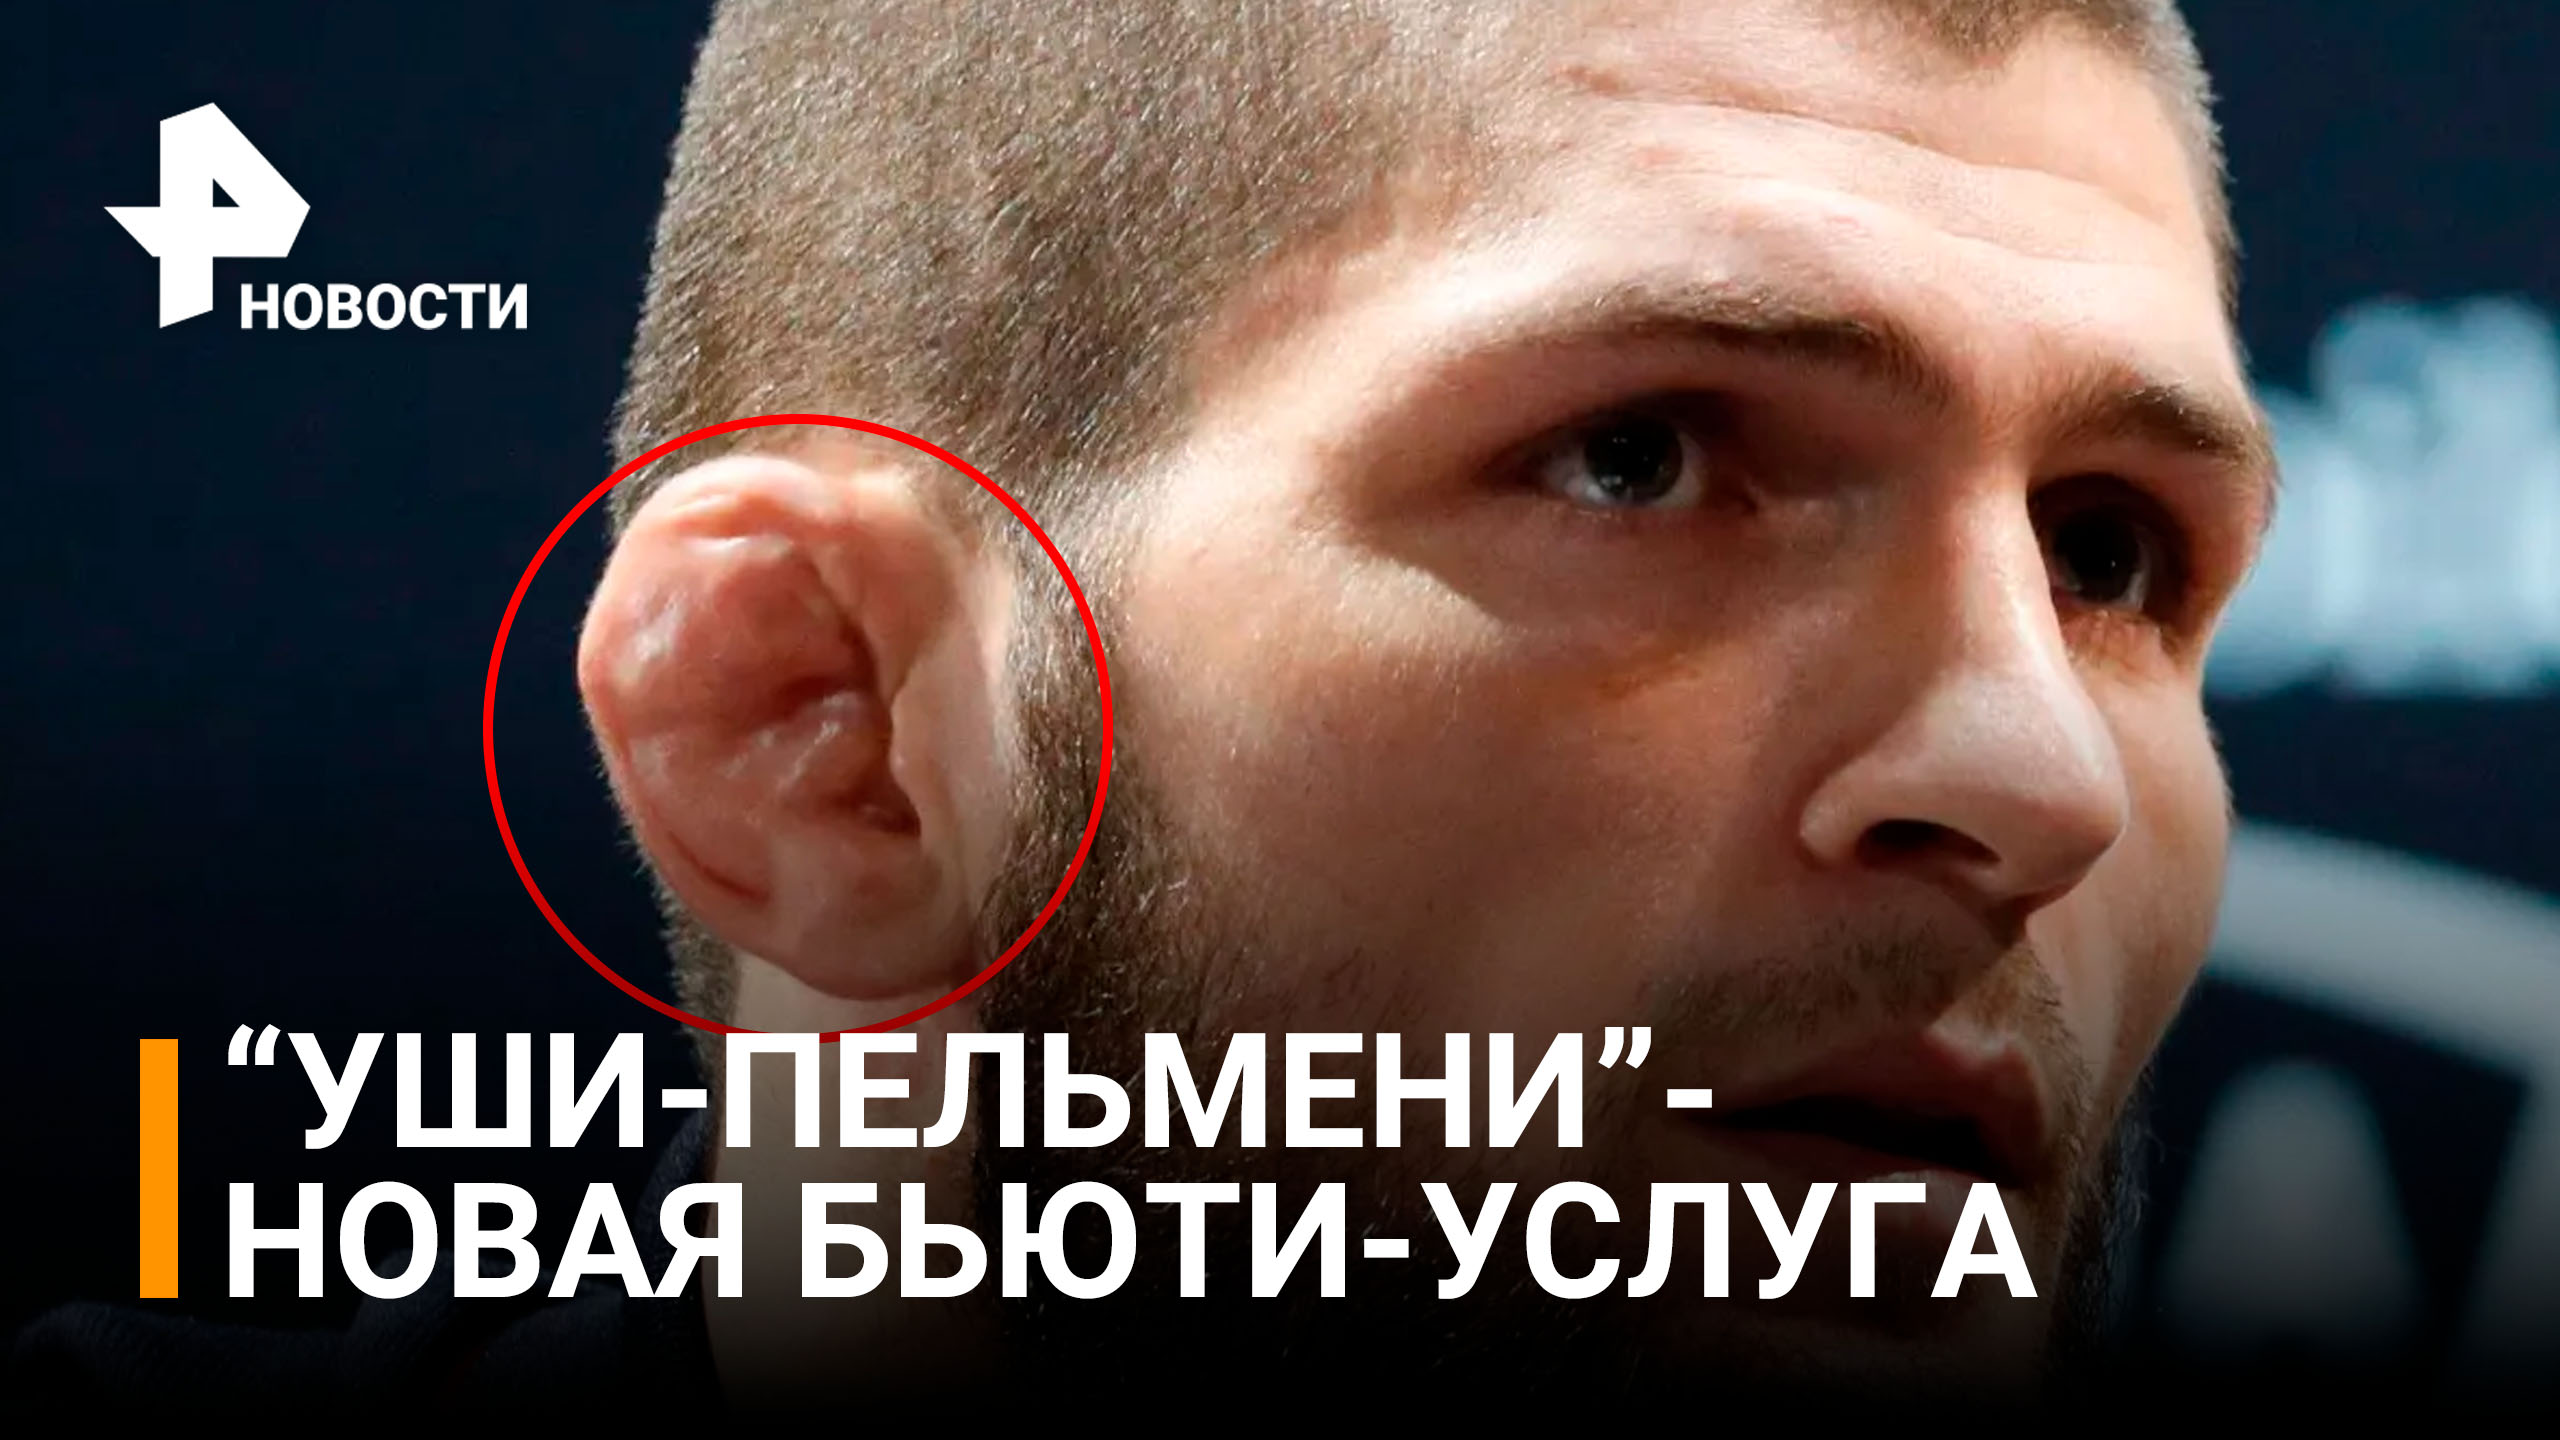 Дагестанские мужчины просят сломать им уши, чтобы девушки их приняли за борцов / РЕН Новости